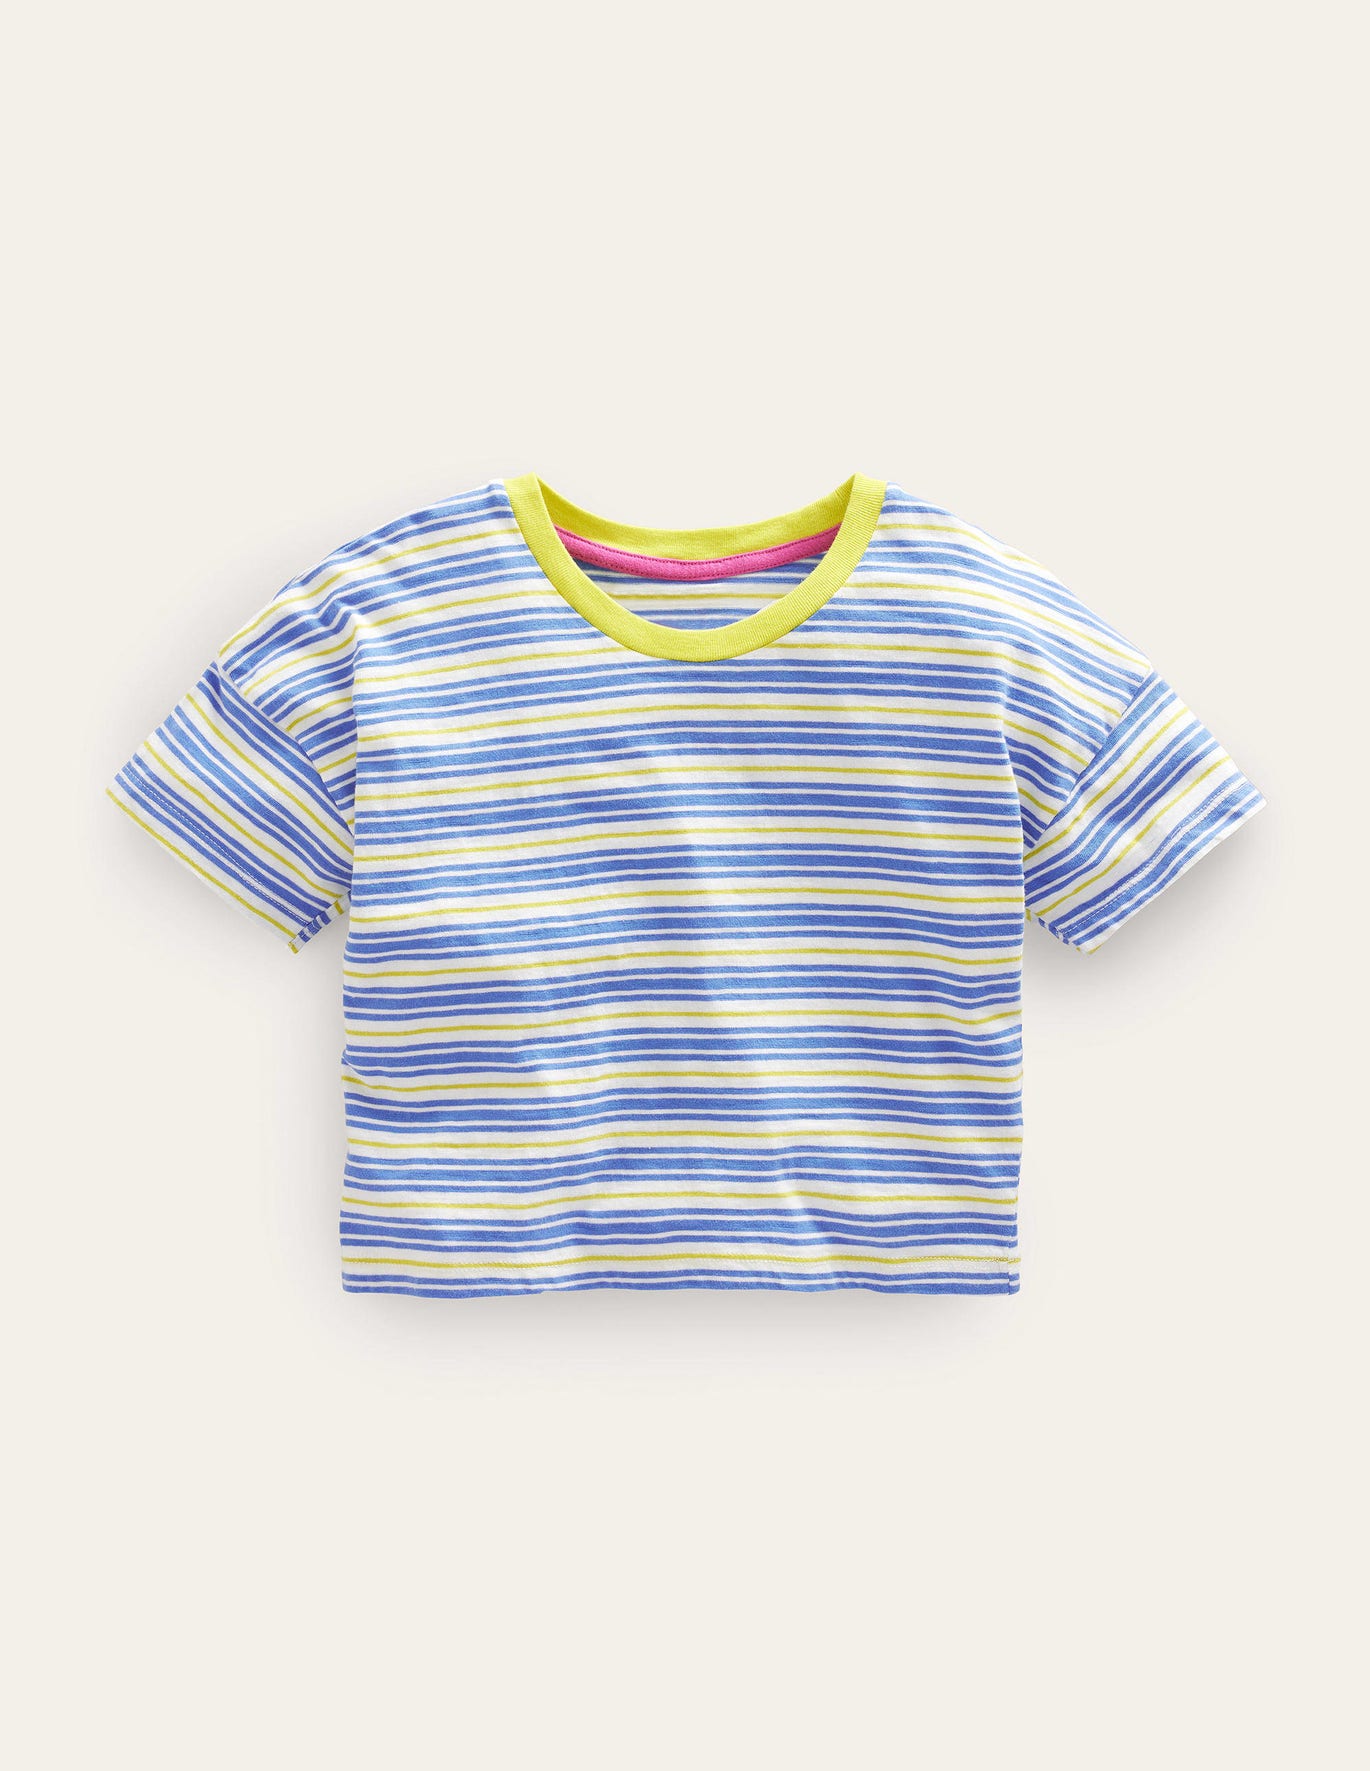 Boden Relaxed T-shirt - Penzance Blue/Neon Yellow